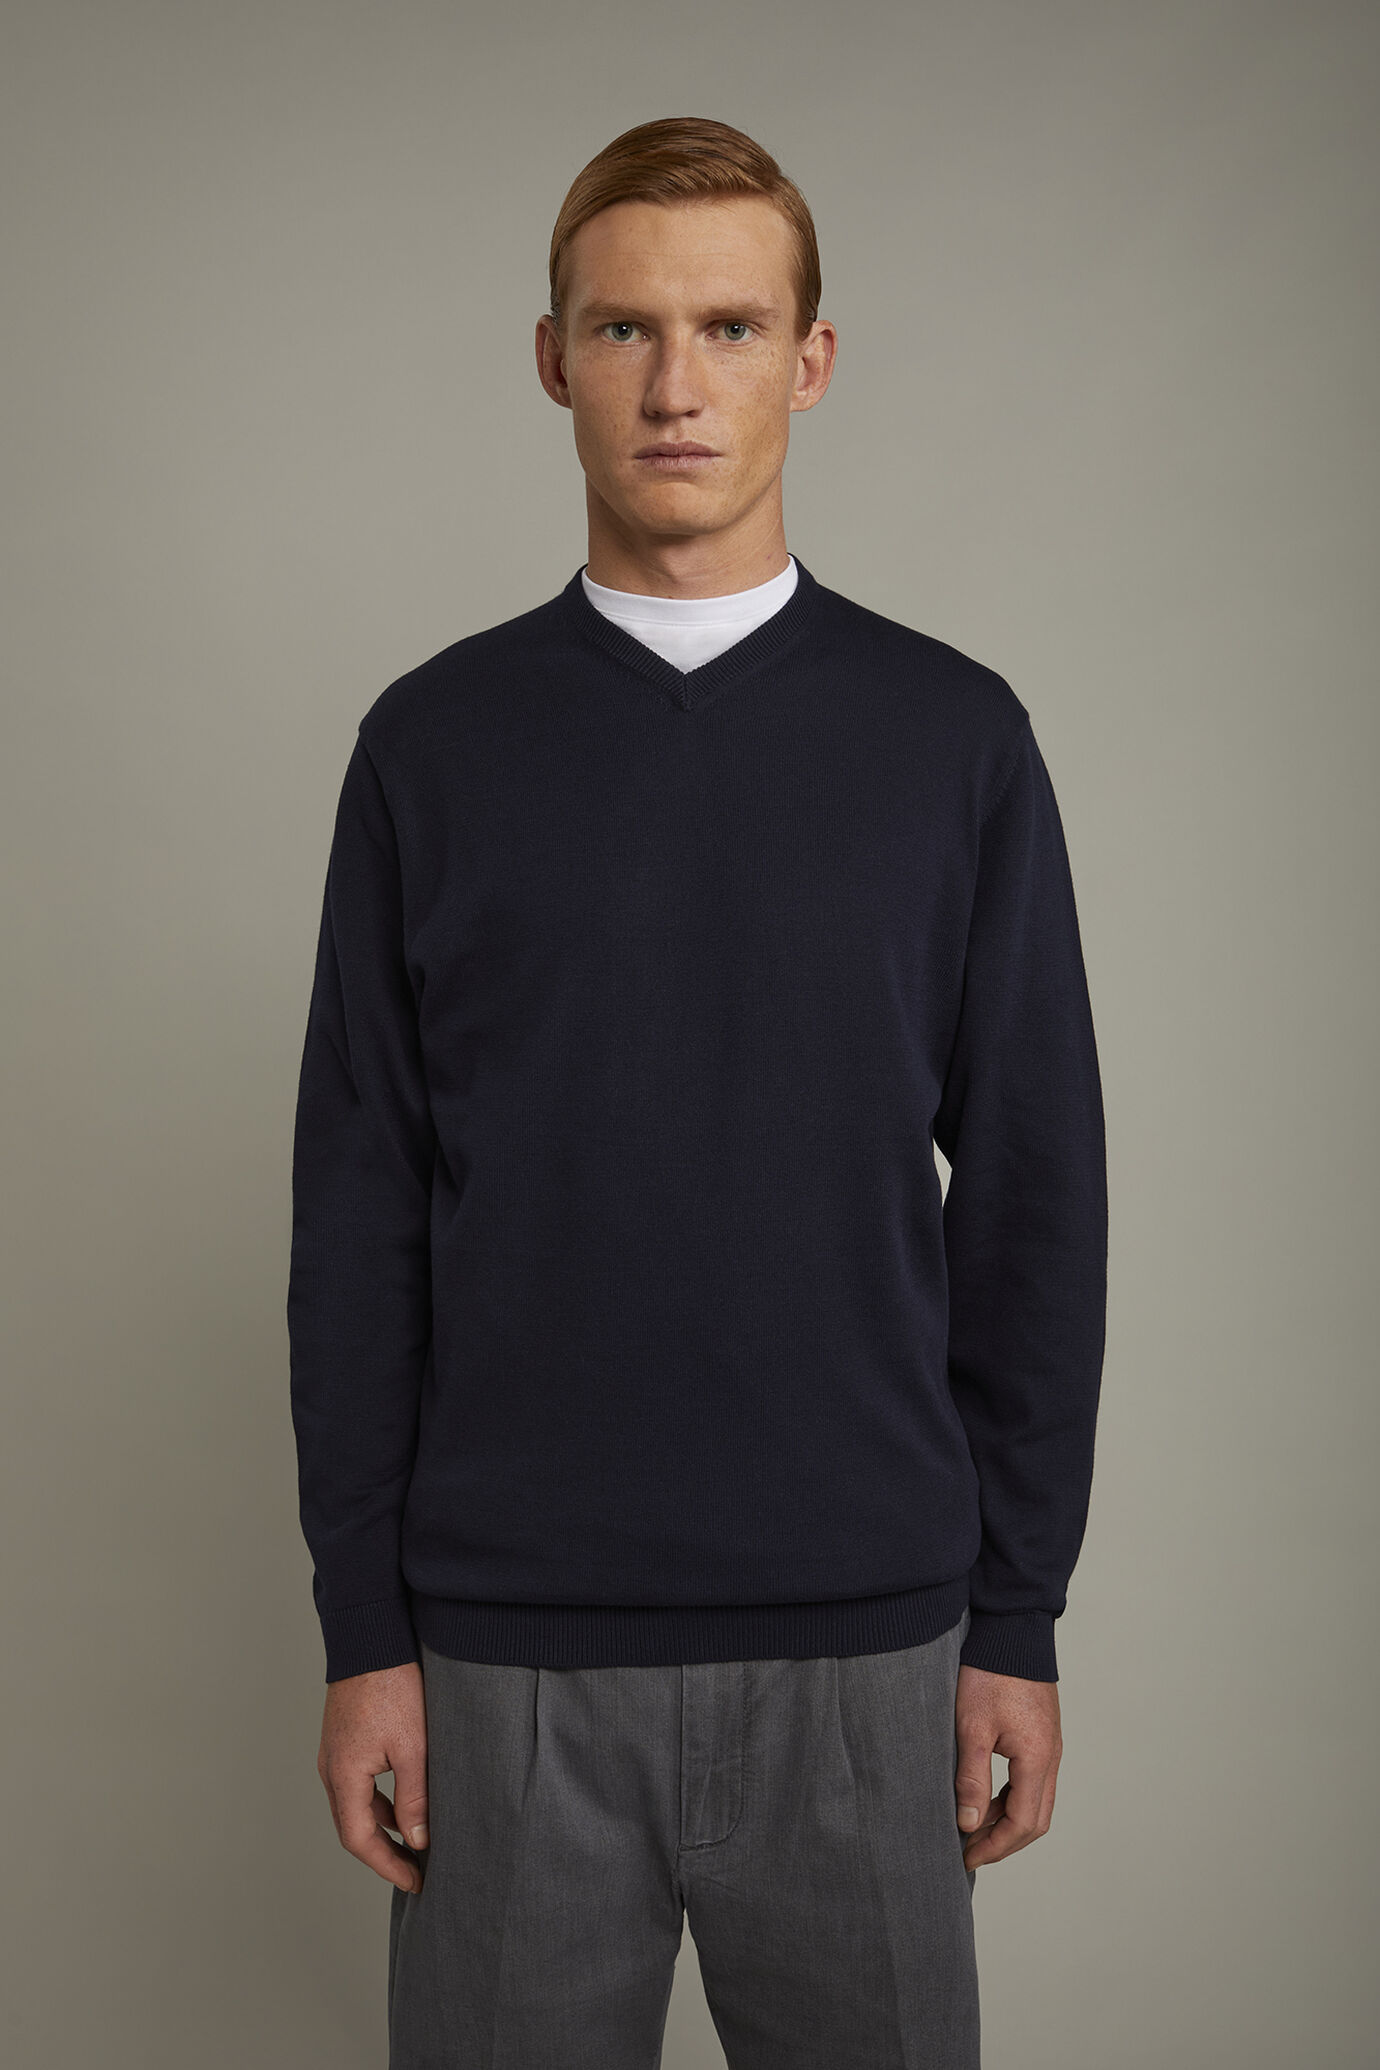 Herren-Pullover mit V-Ausschnitt aus 100 % Baumwolle in normaler Passform